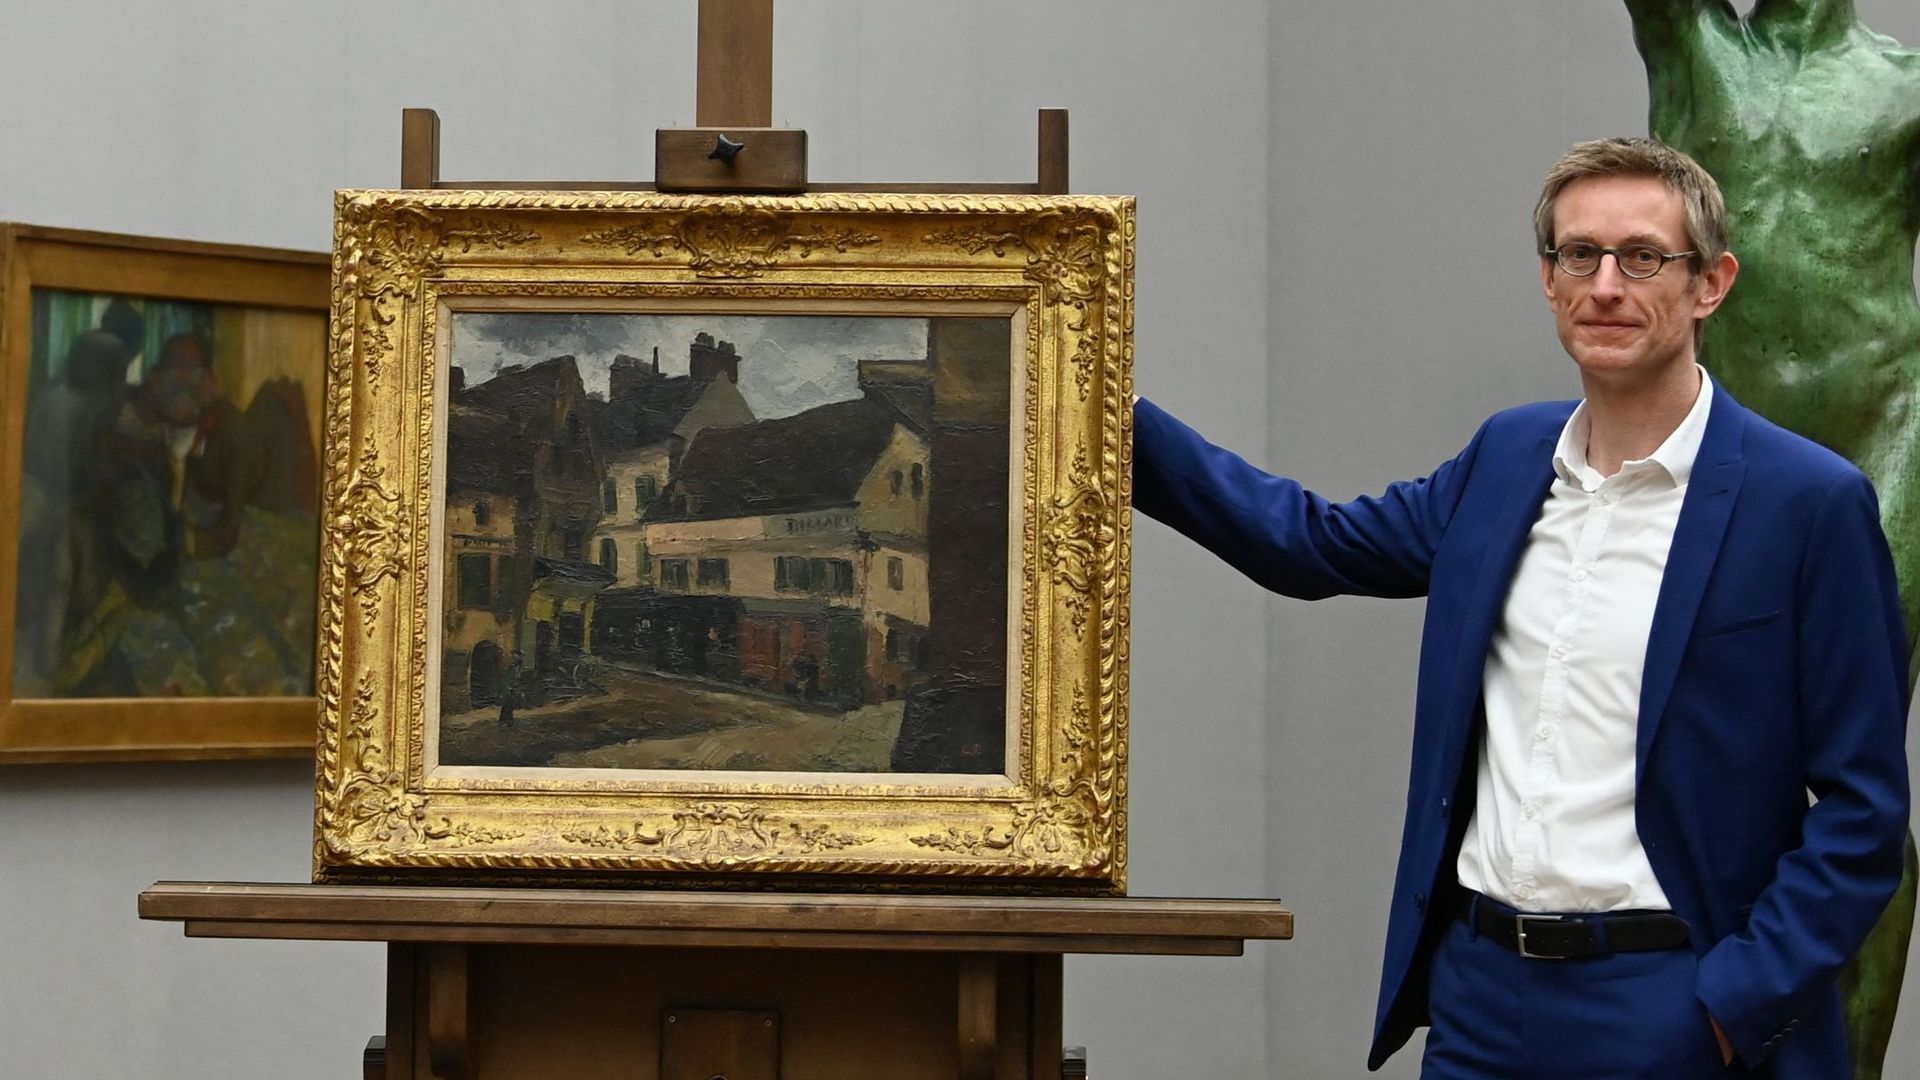 L'historien allemand Ralph Gleis, directeur de la Alte Nationalgalerie à Berlin pose à côté du tableau de Camille Pissaro, "Une place la Roche-Guyon".